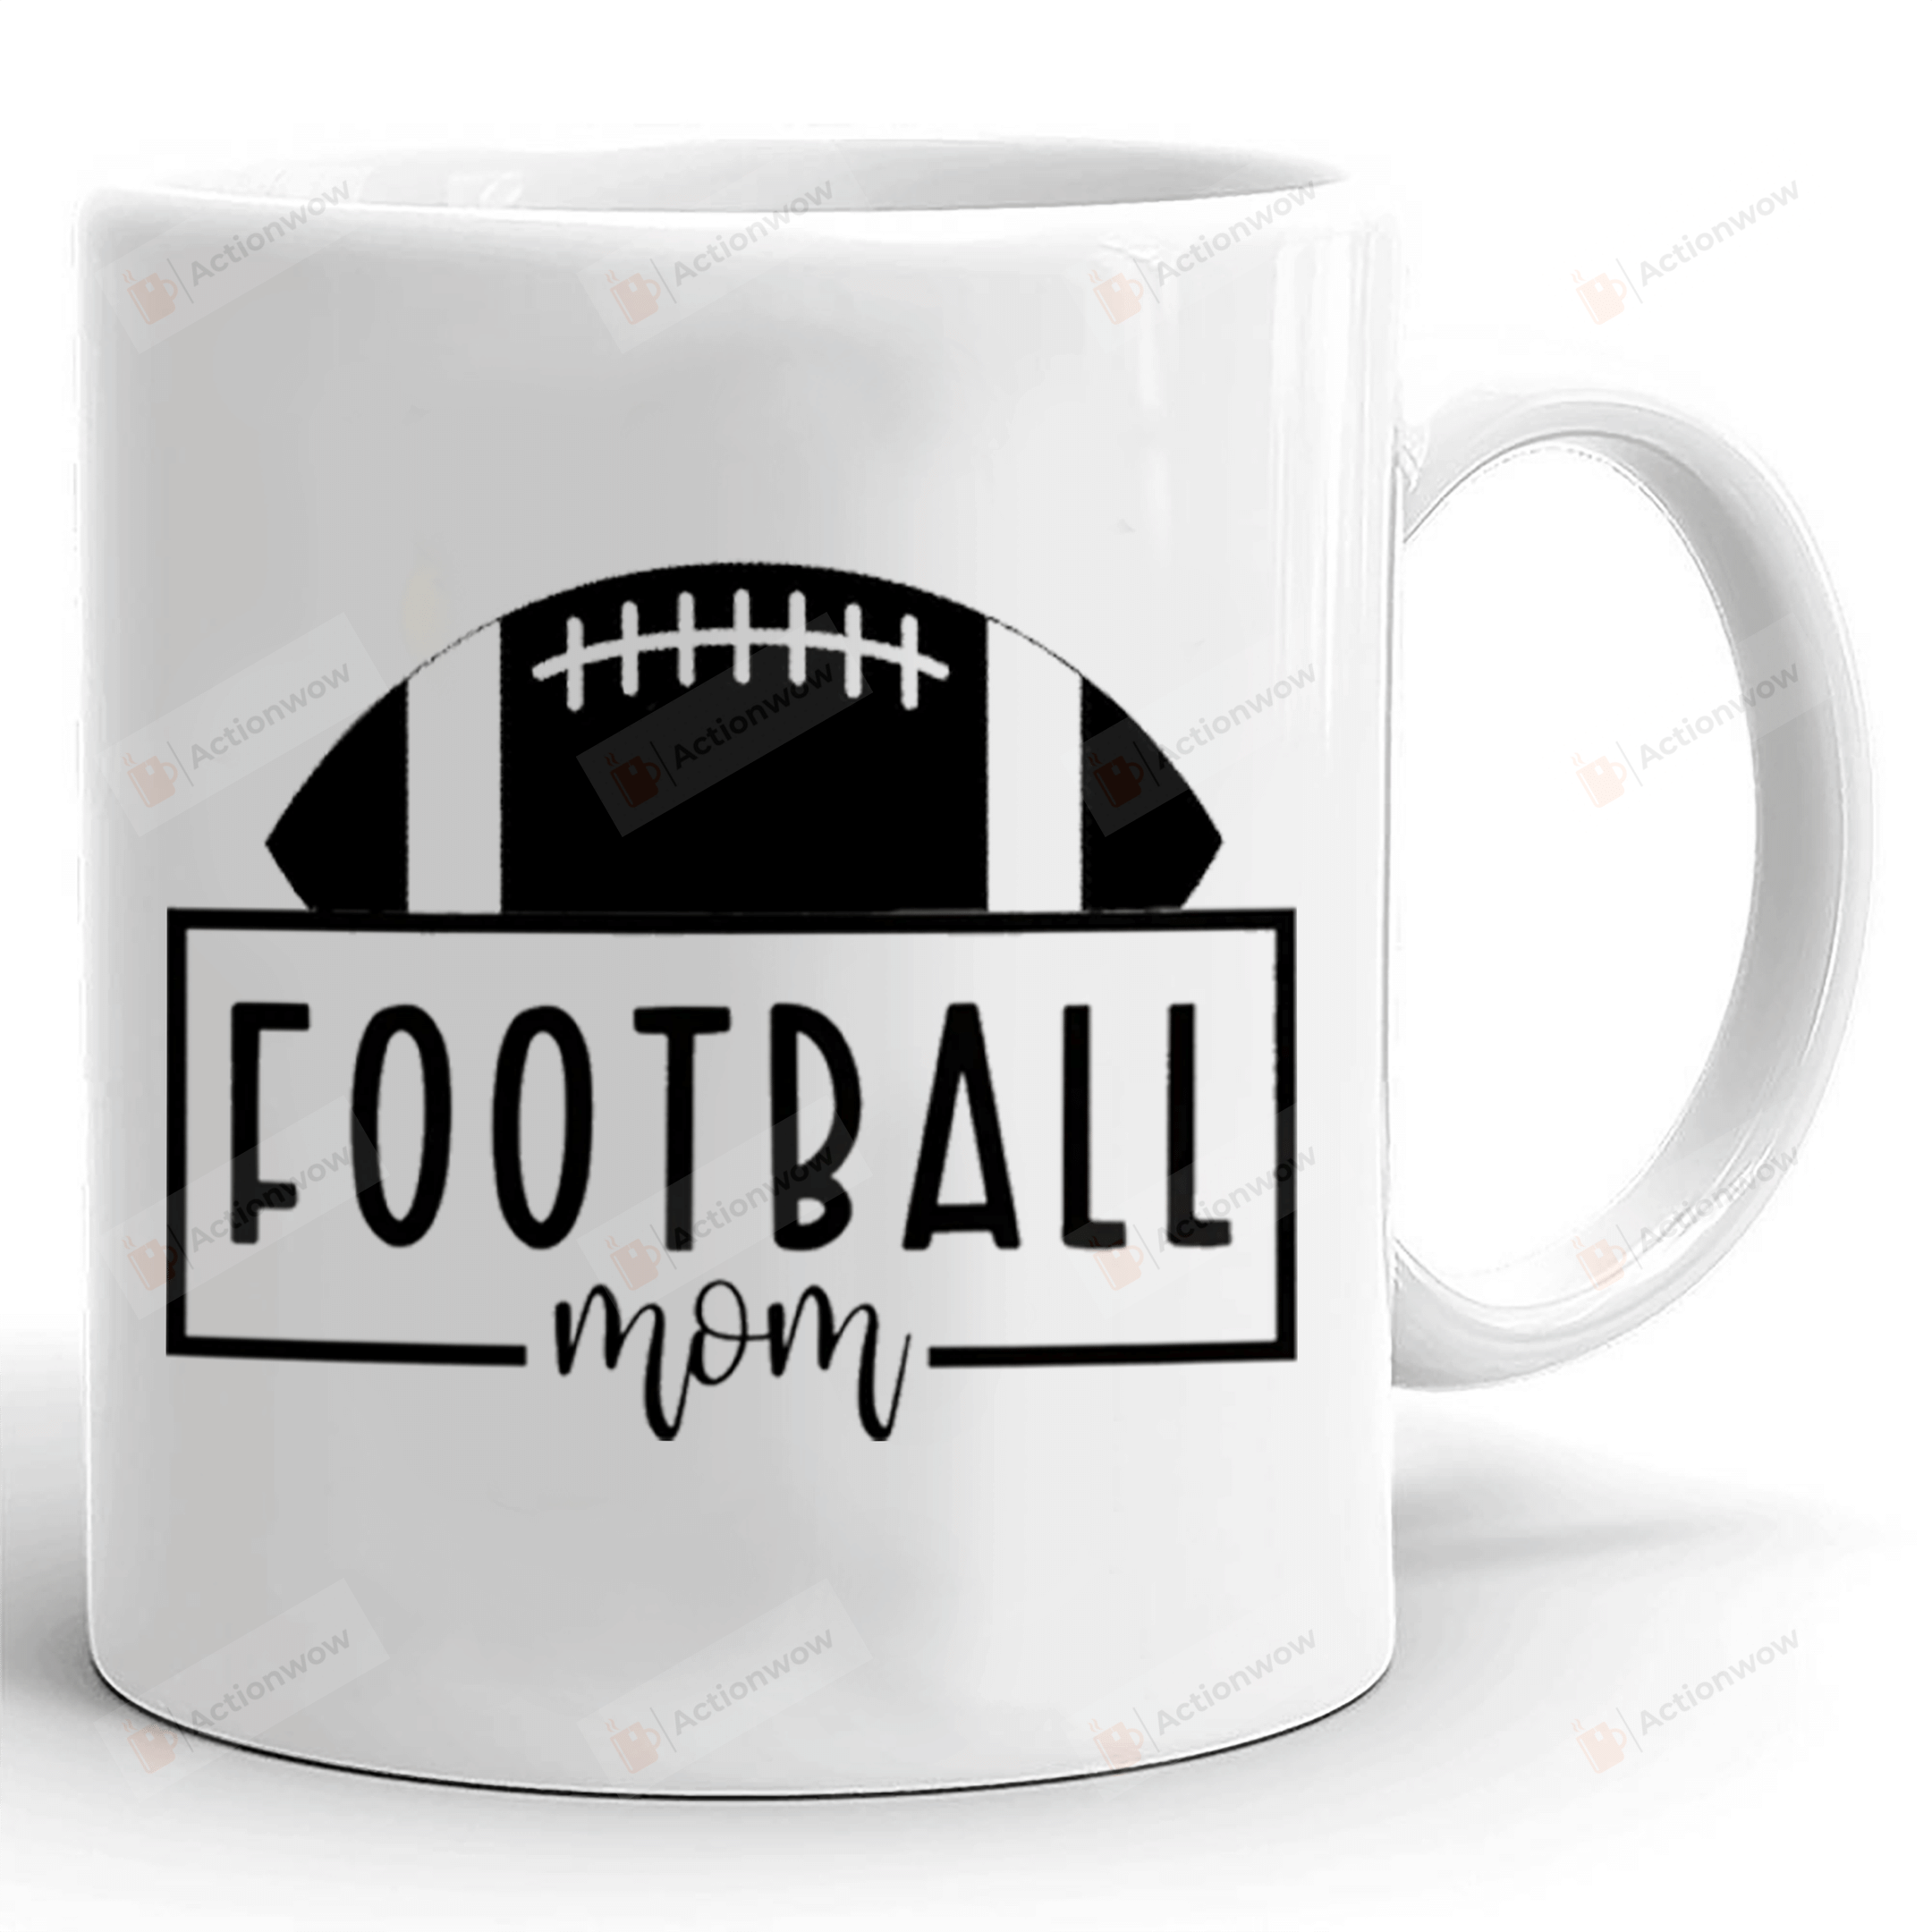 Football Mom Coffee Mug, Game Day Mug, Football Mug, Sports Mug, Mama Mug, Mom Mug, Gifts For Mom